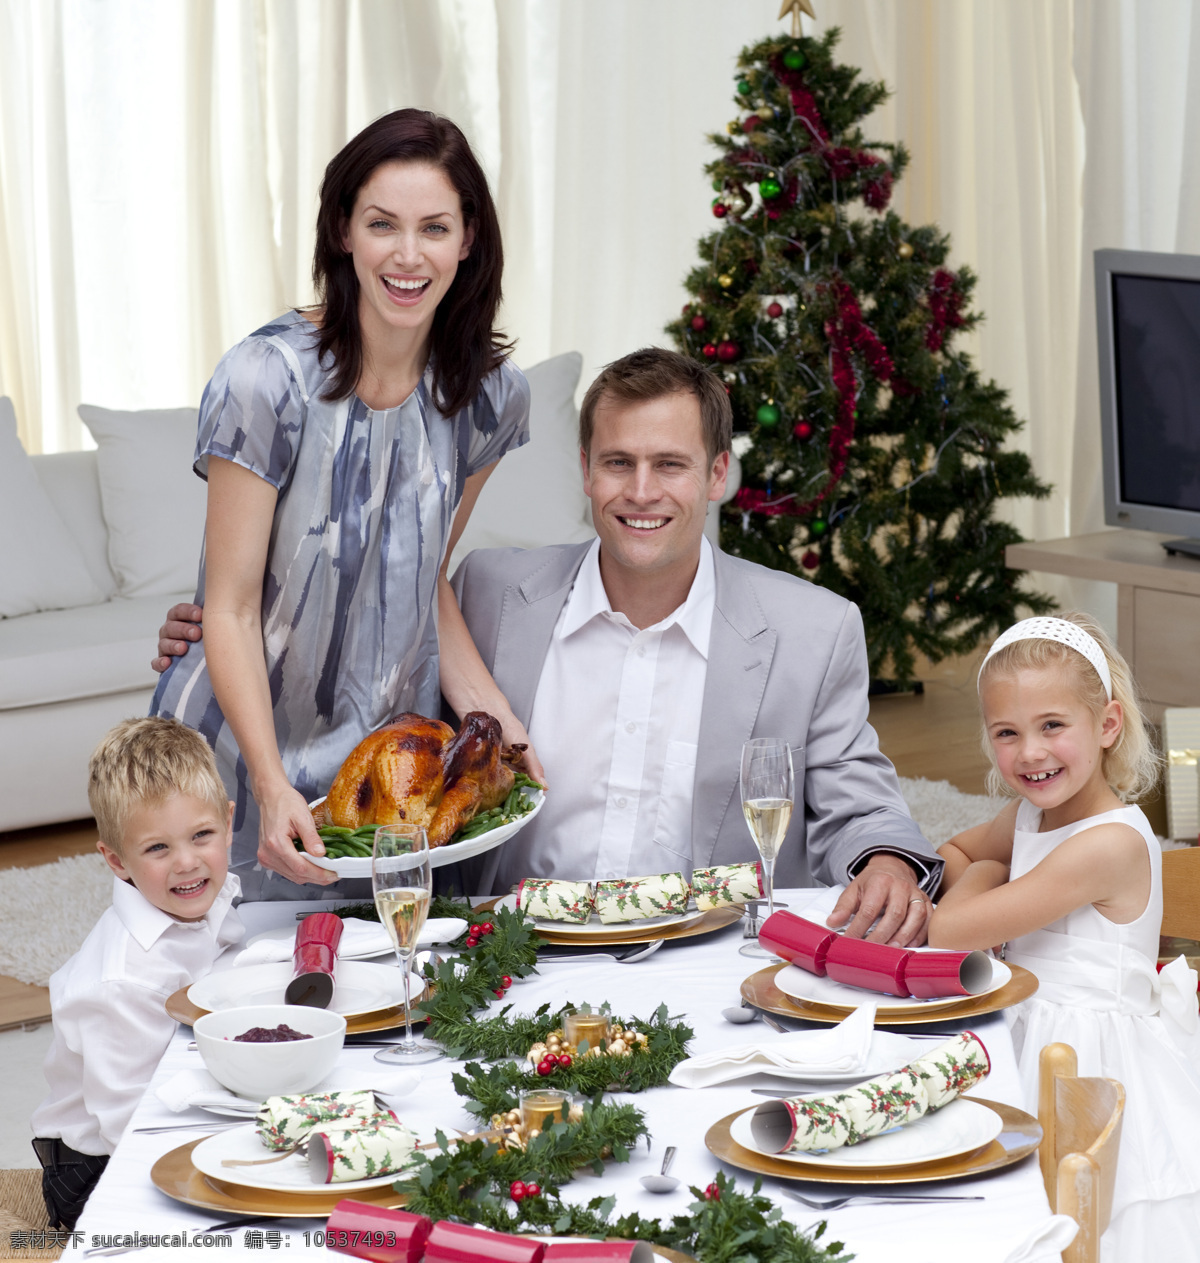 餐桌 上 一家 四口 外国男性 男人 女性 外国夫妻 夫妇 爸爸妈妈 外国家庭 幸福温馨 儿童 男孩 女孩 用餐 圣诞树 生活人物 人物图片